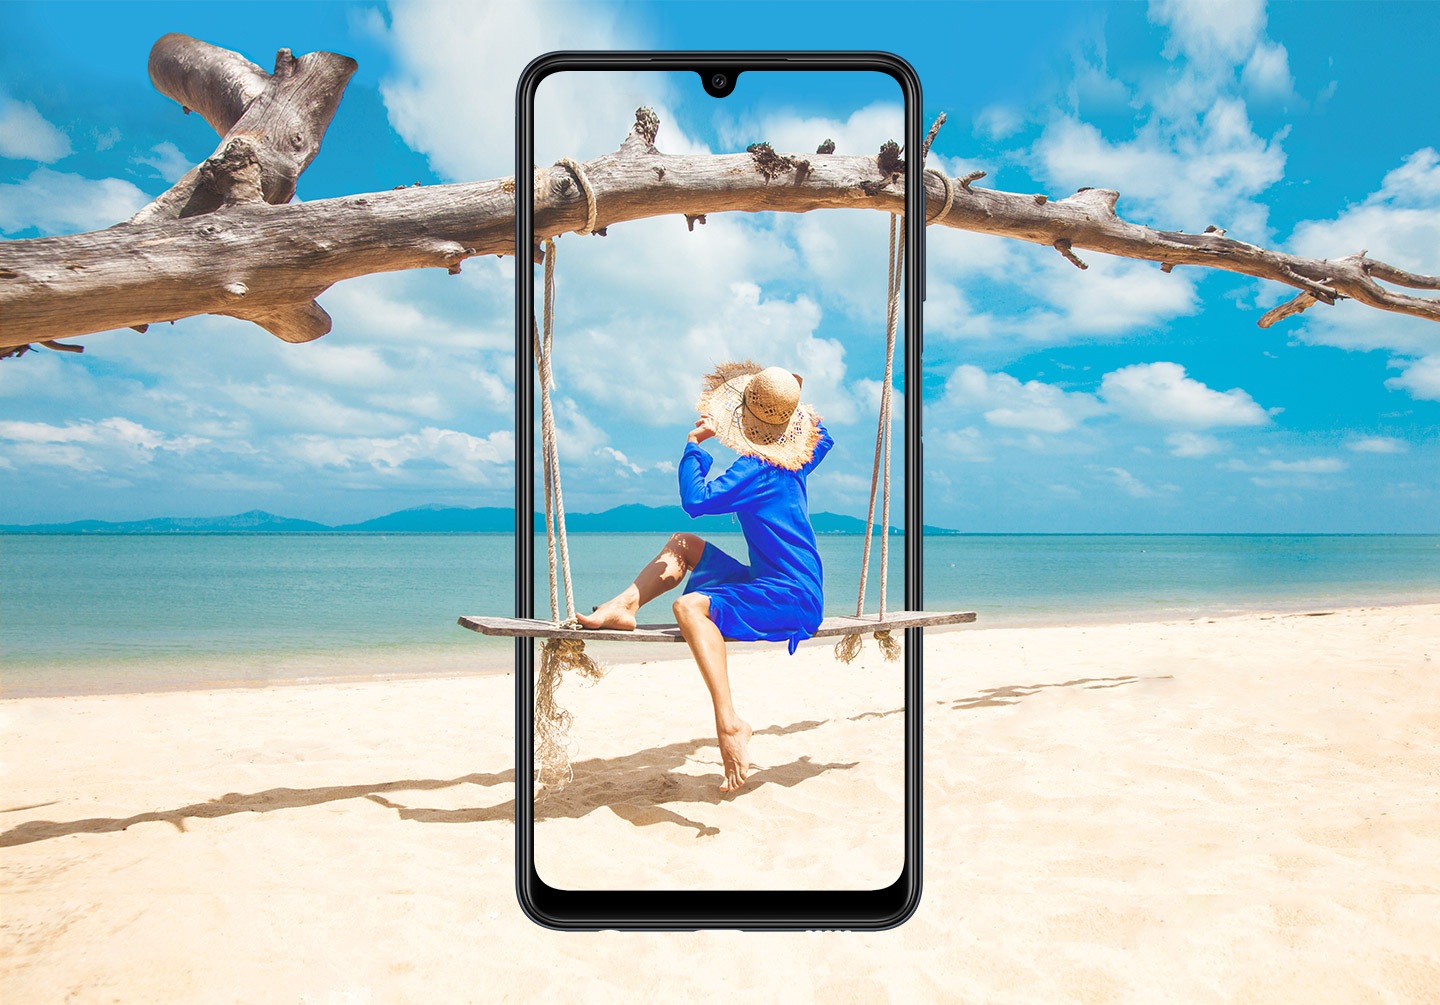 Un Galaxy M22 è visto di fronte, verticalmente. Sullo schermo, una donna siede su un'altalena di legno appesa a un ramo, che si fonde oltre la cornice con la spiaggia sabbiosa.